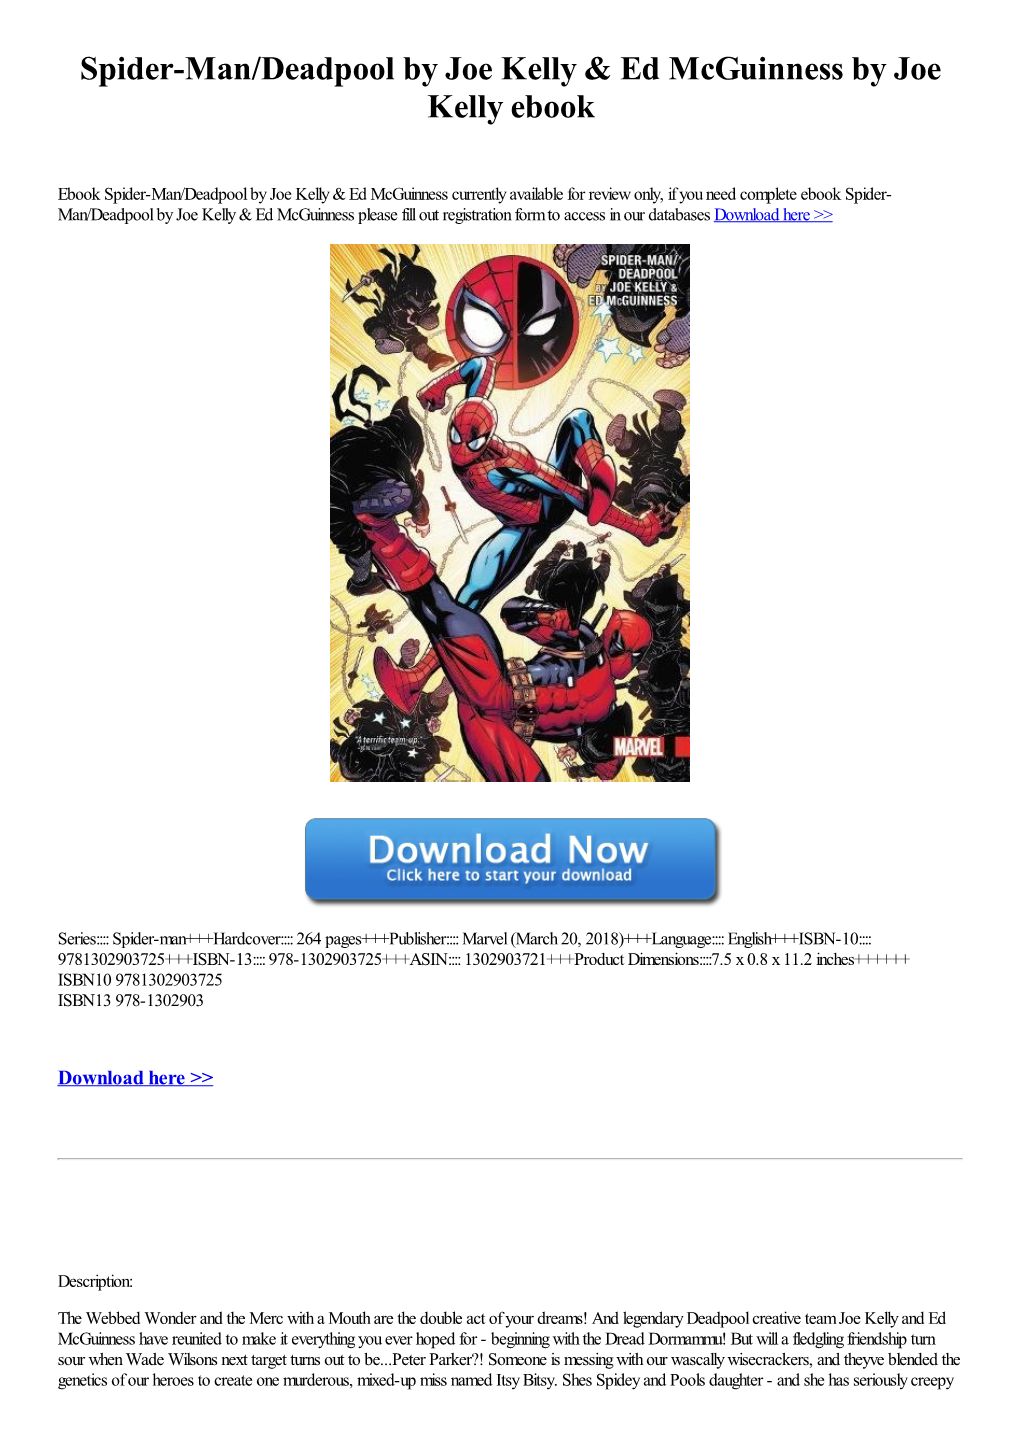 Spider-Man/Deadpool by Joe Kelly & Ed Mcguinness by Joe Kelly